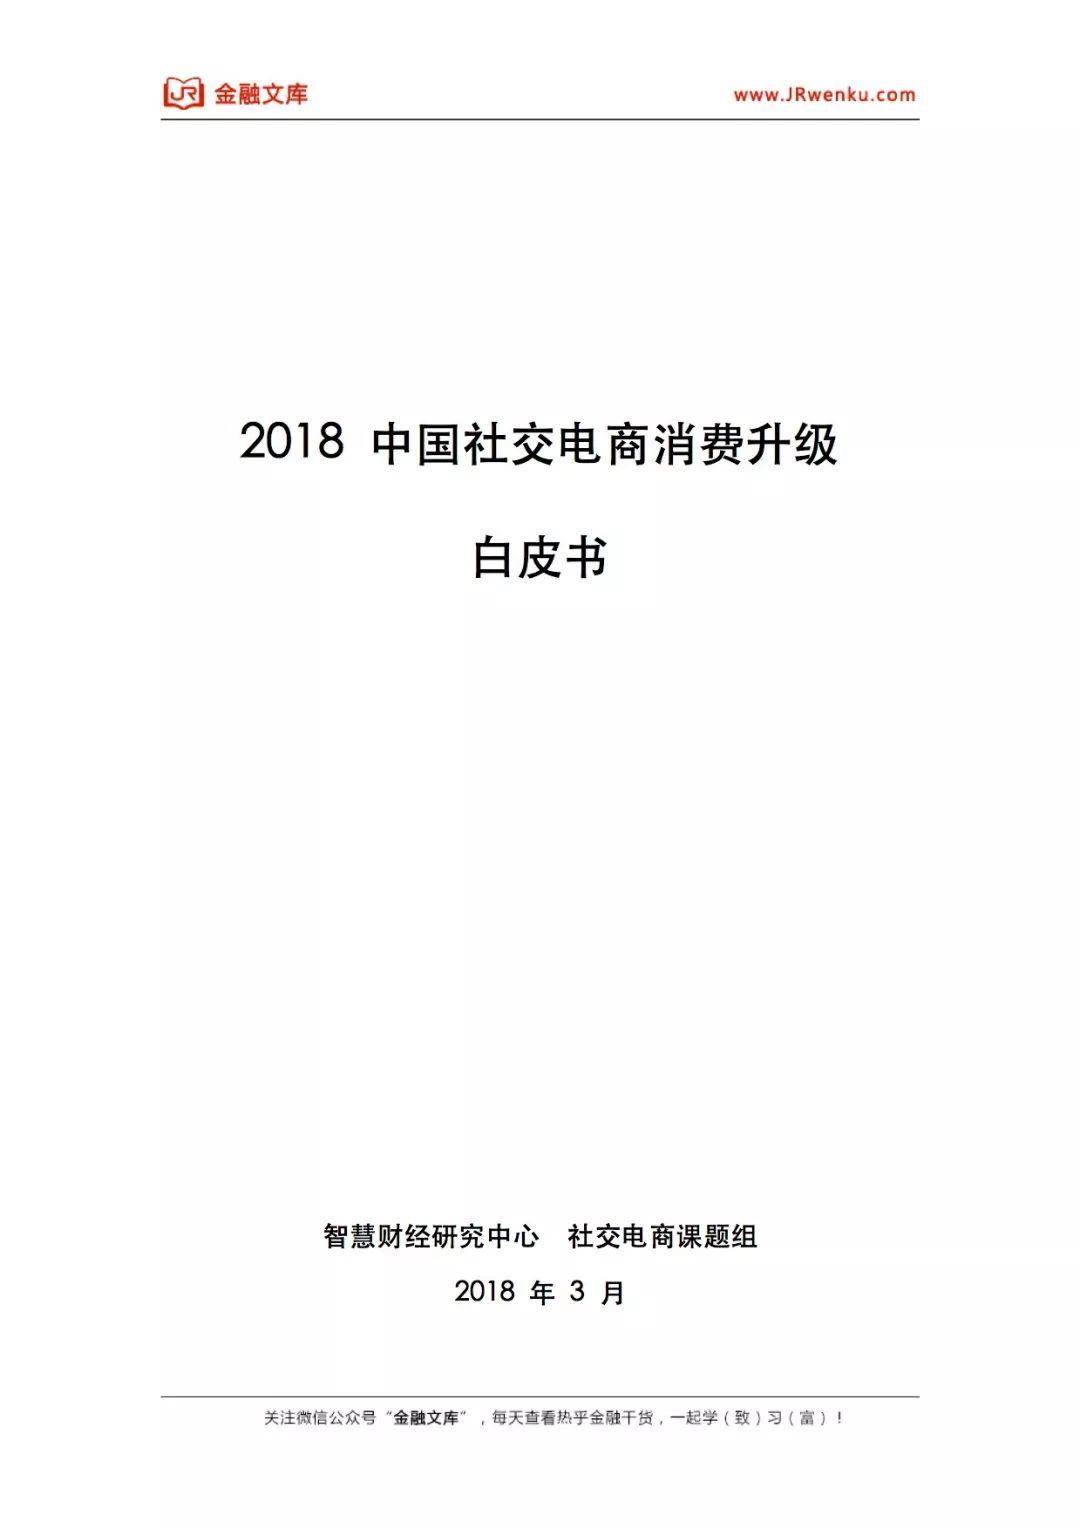 2018中国社交电商消费升级白皮书